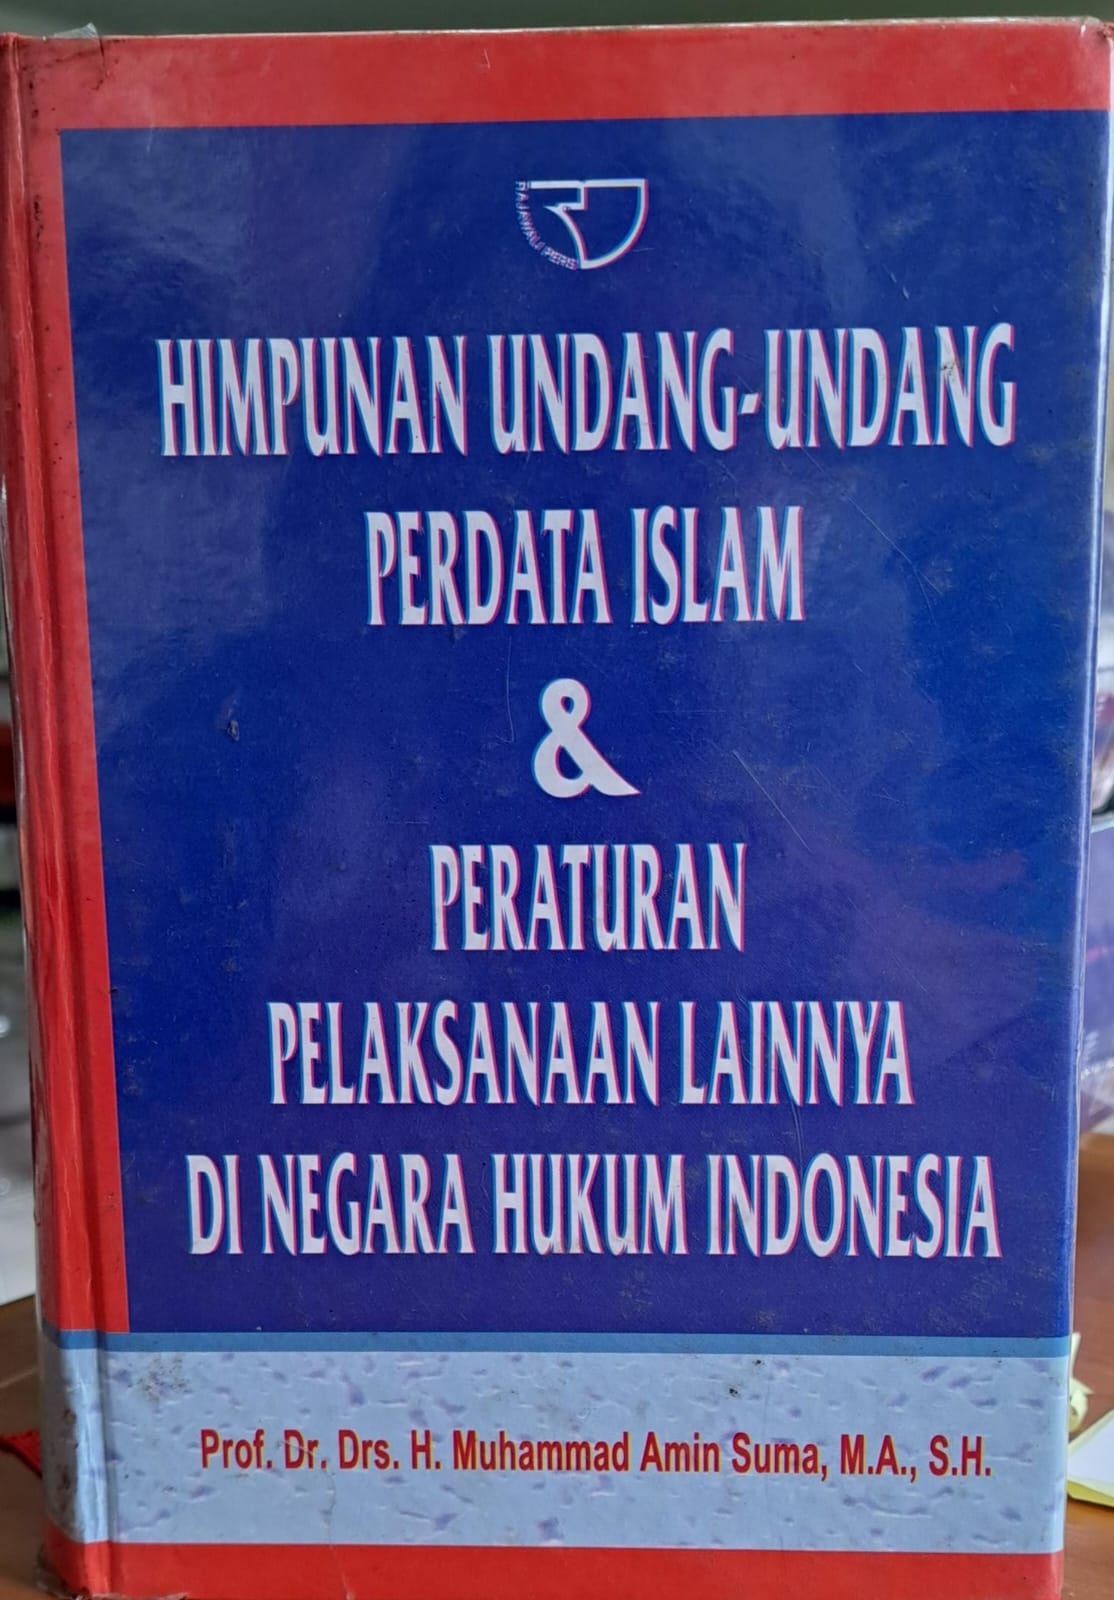 Himpunan undang-undang perdata islam & peraturan pelaksanaan lainnya di negara hukum Indonesia